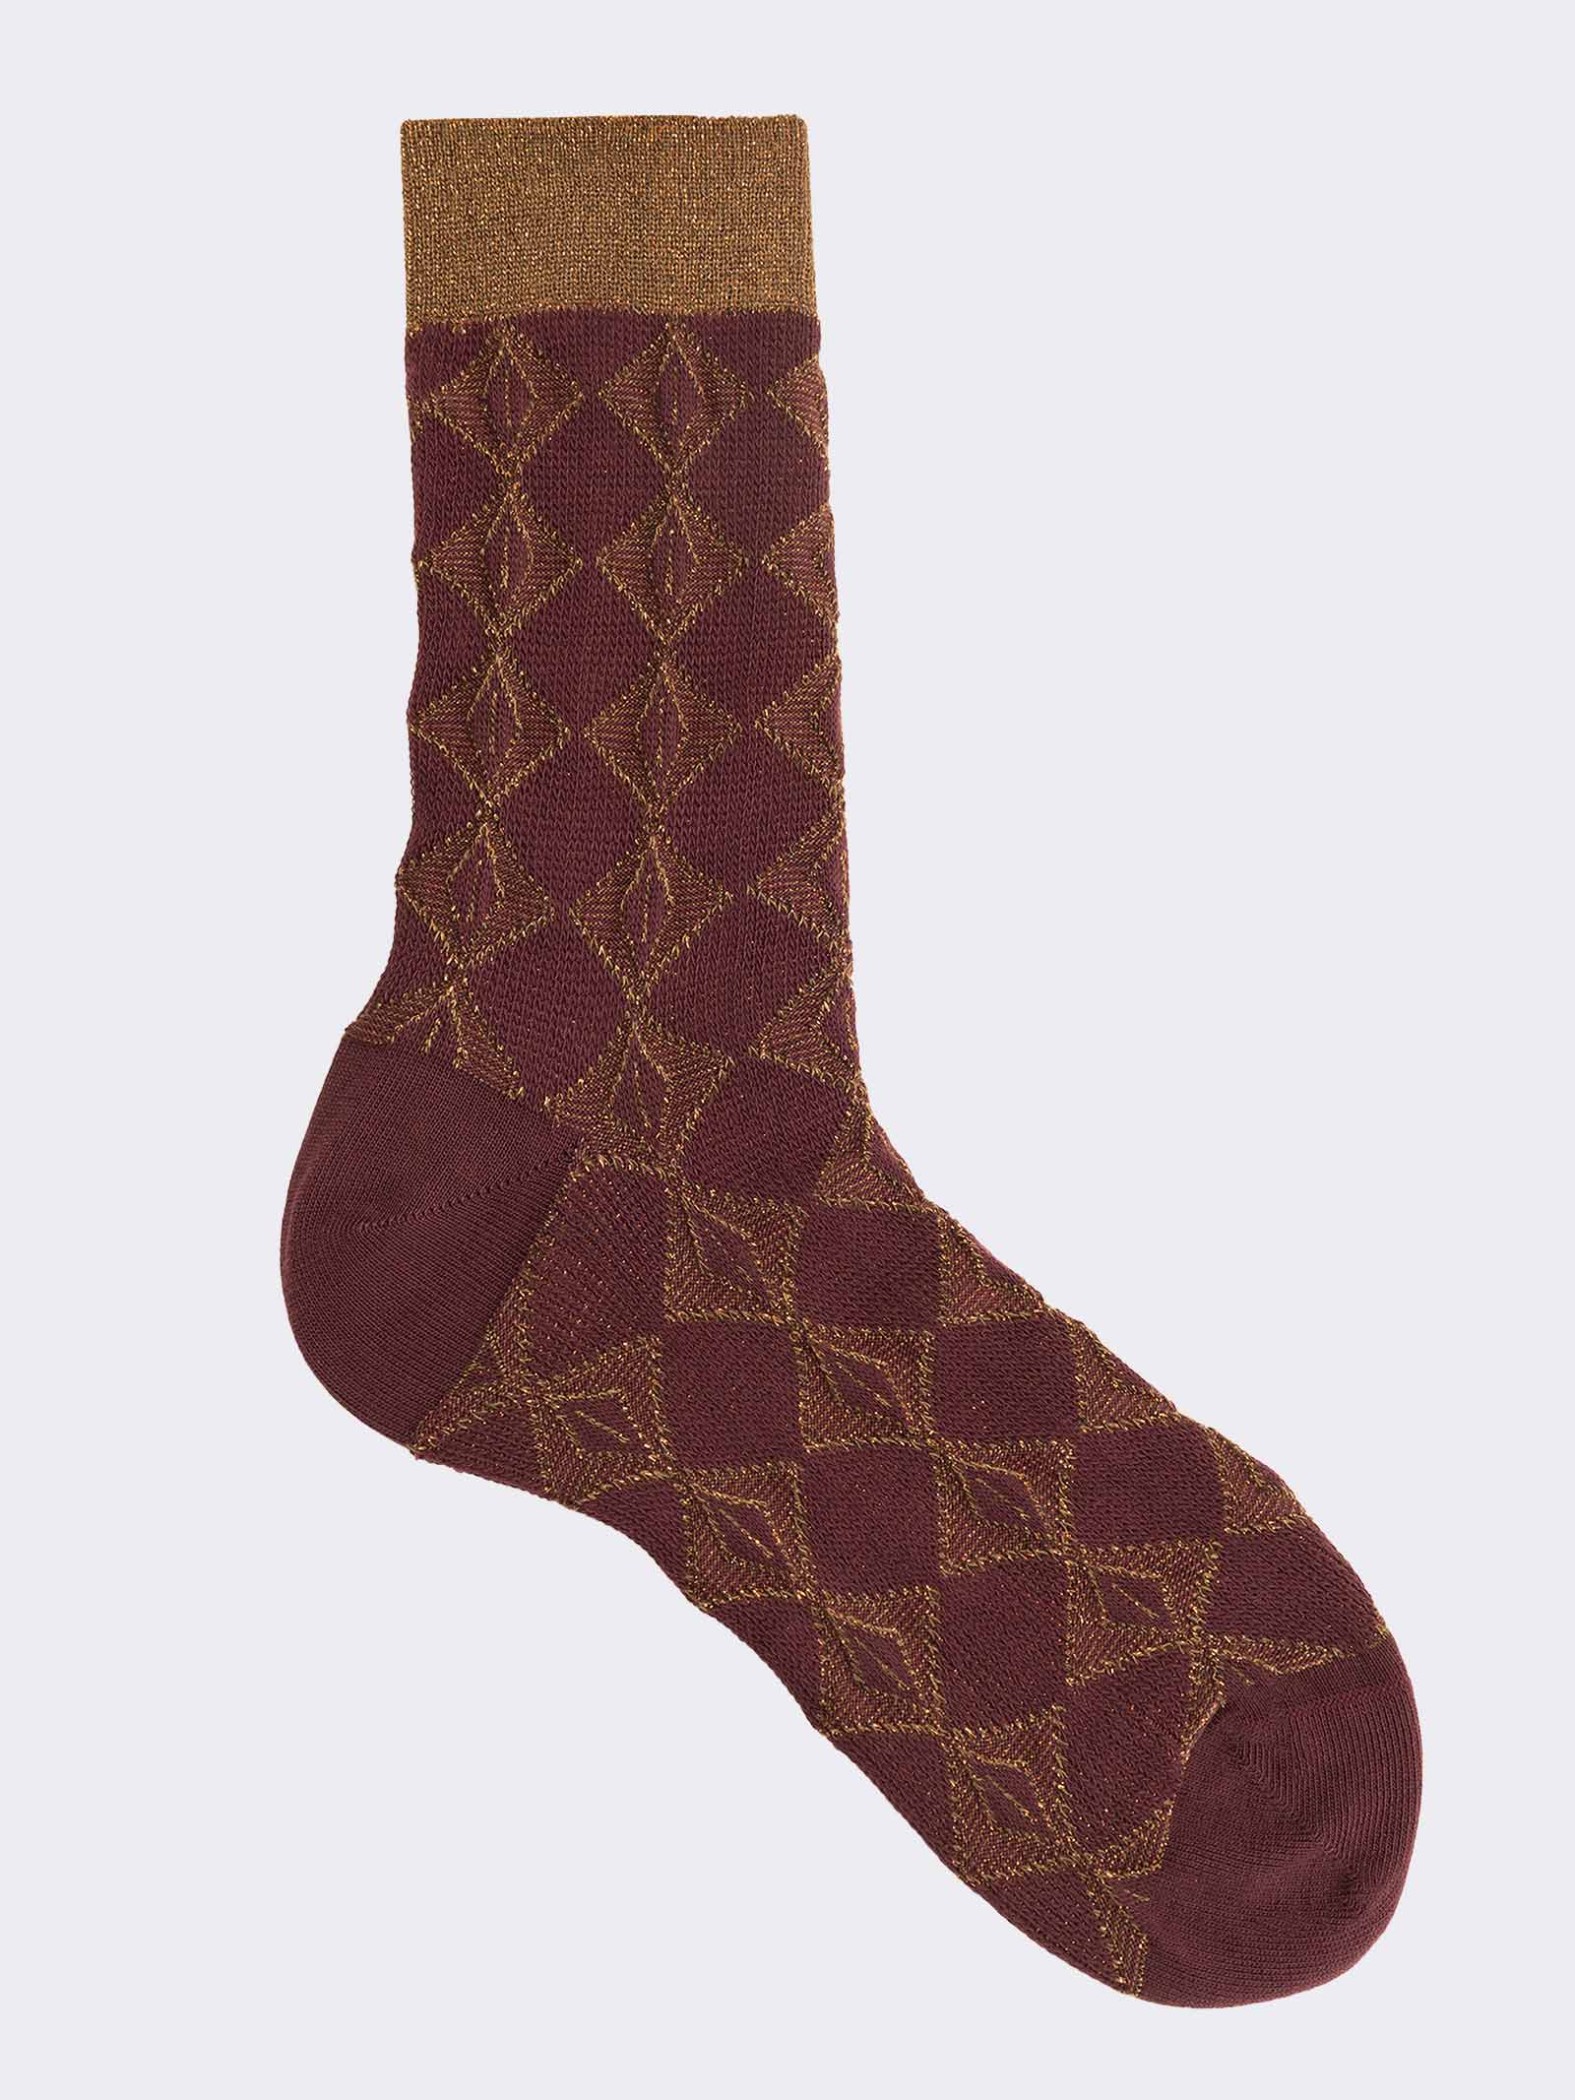 Rautenförmige Socken mit Lurex-Muster aus warmer Baumwolle für Damen